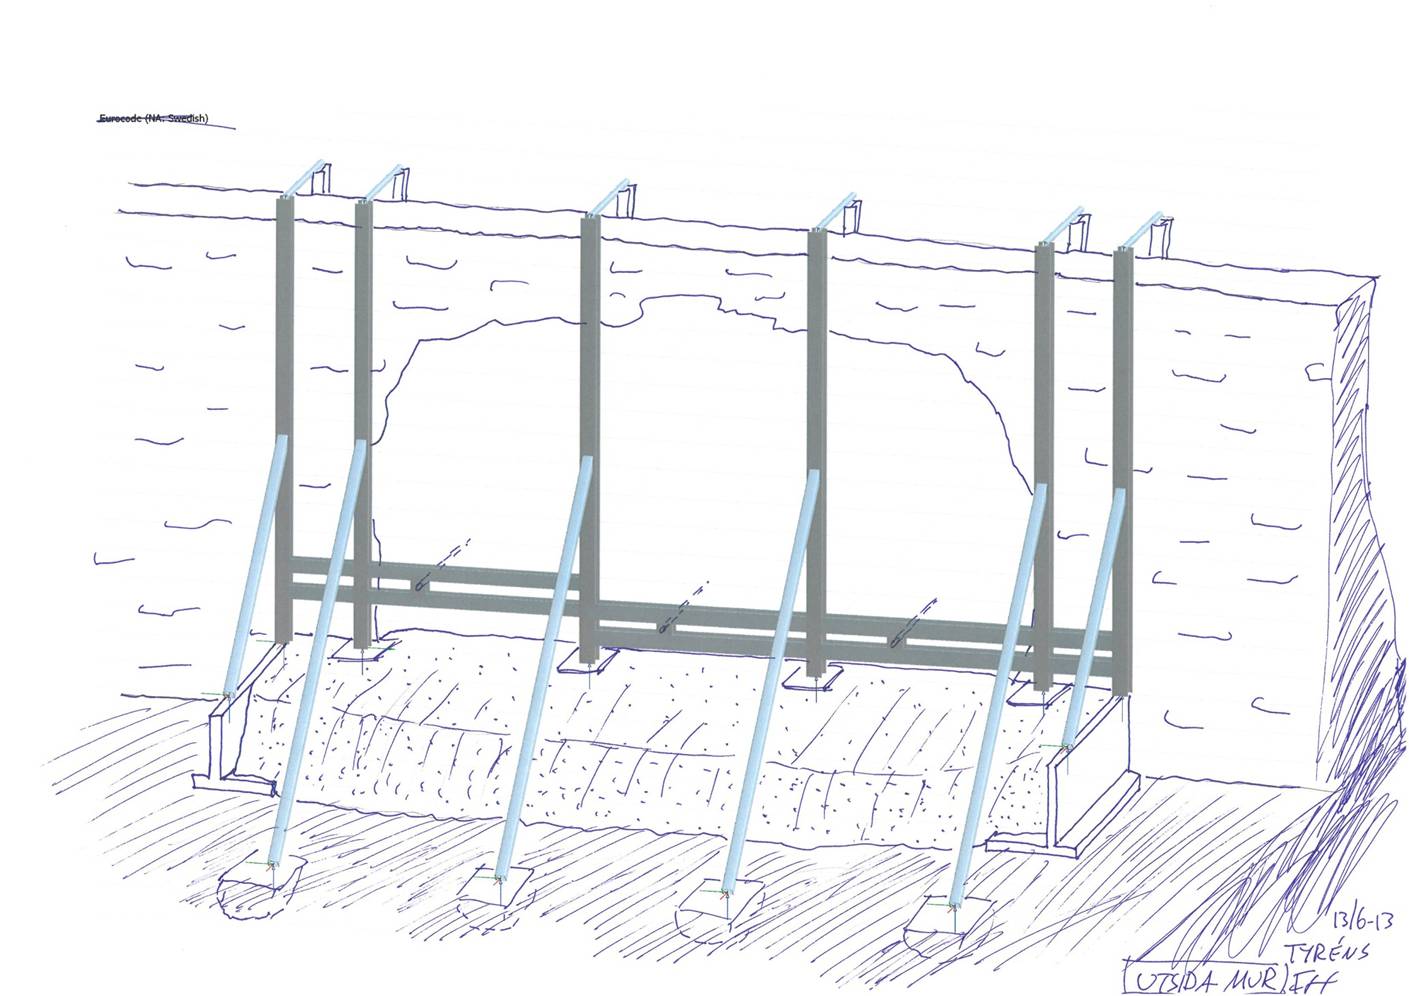 Skiss på hur stålkonstruktionen bärs upp av en gjuten platta, muren sett från utsidan.